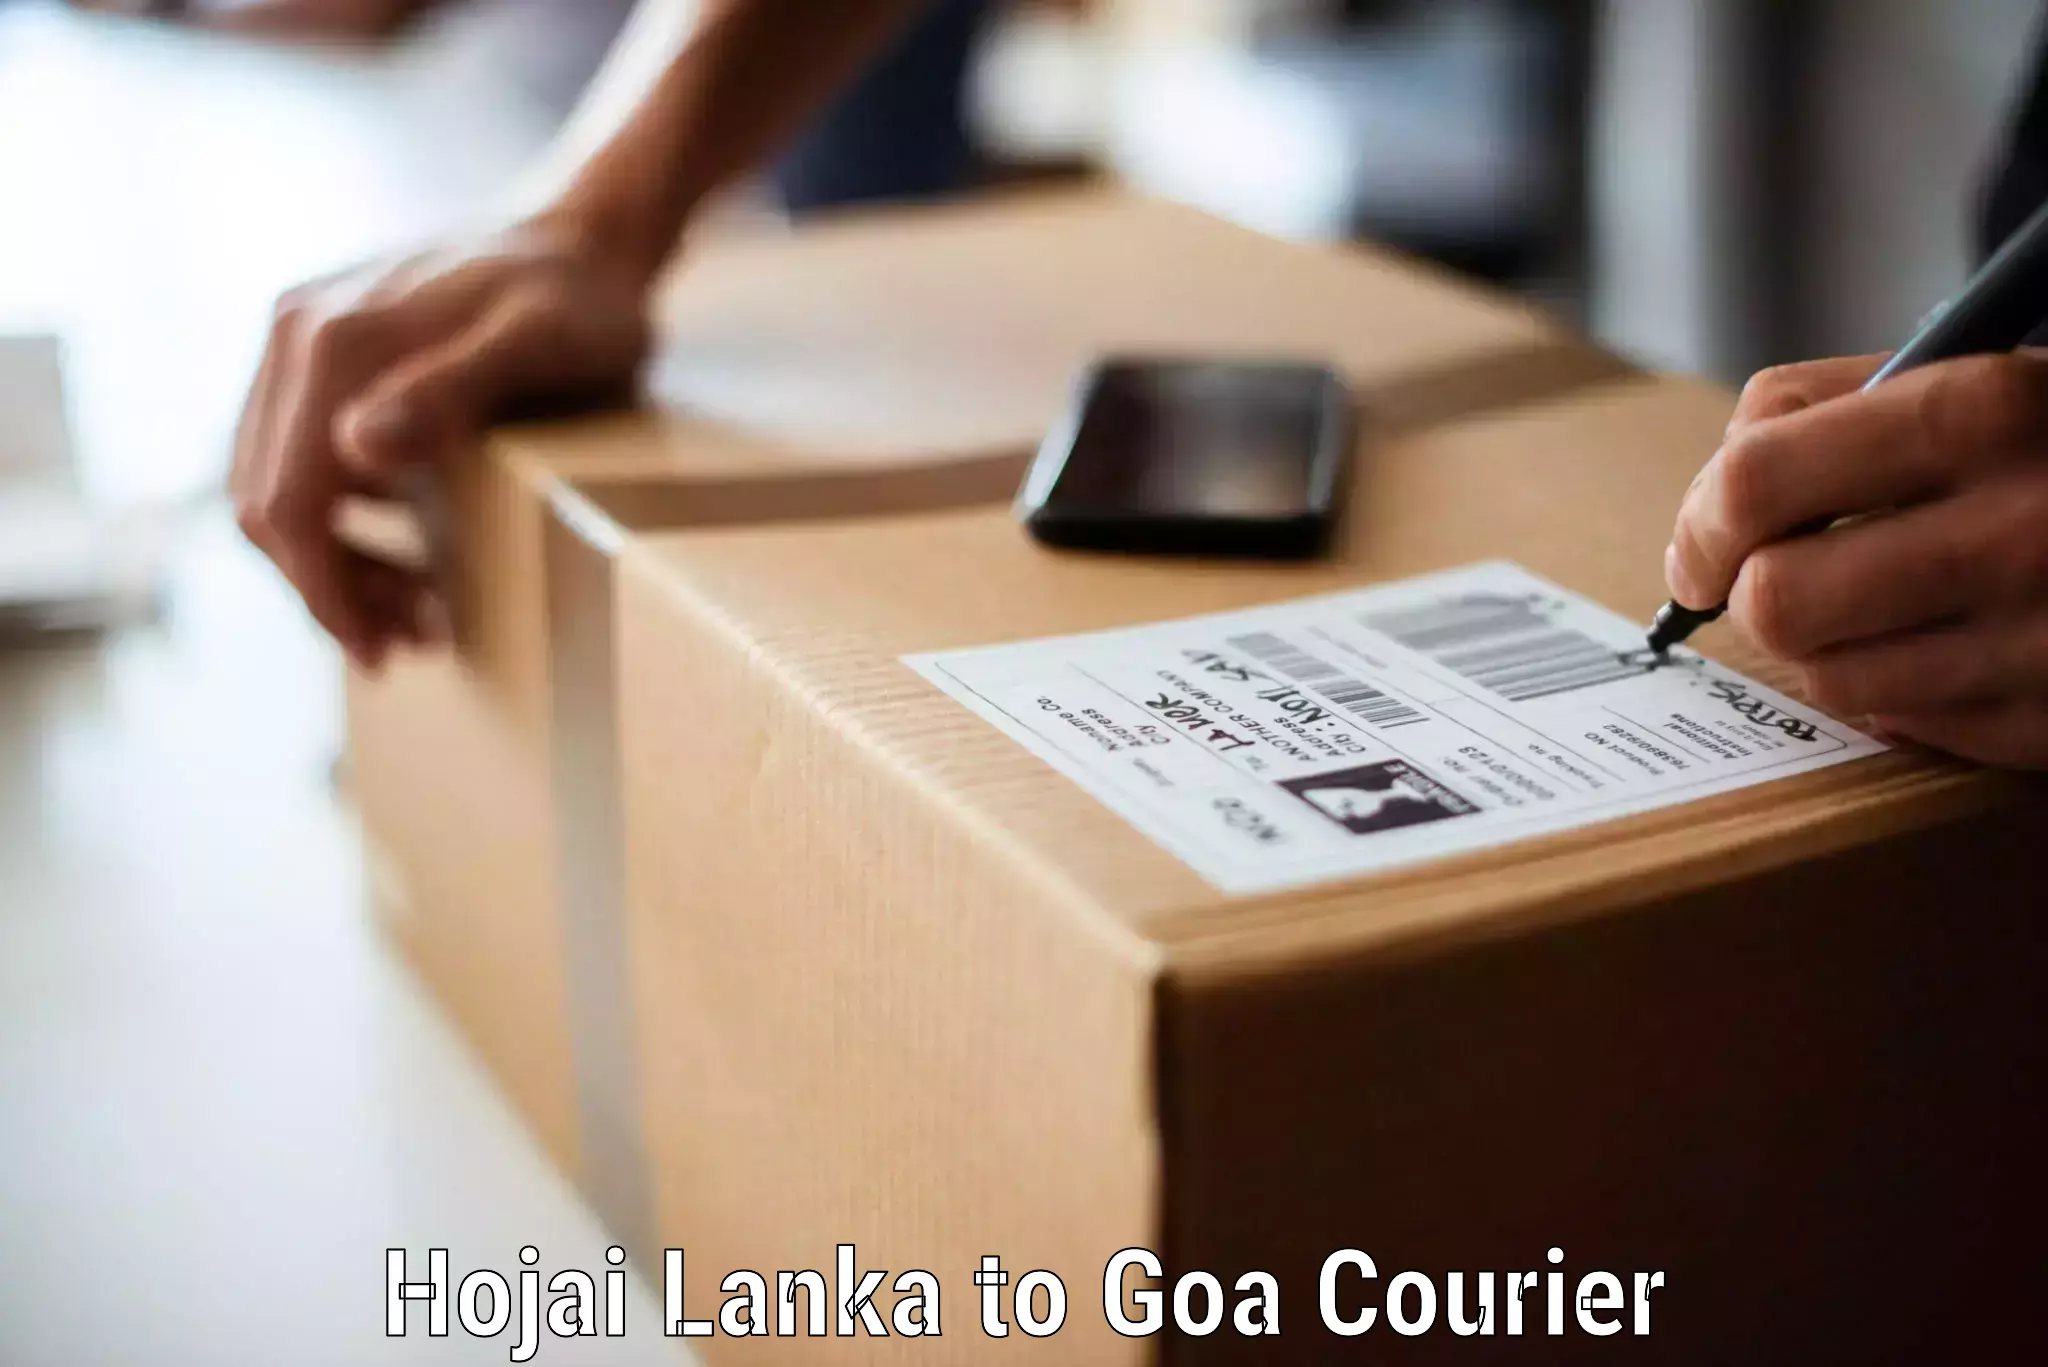 Household goods movers in Hojai Lanka to Vasco da Gama